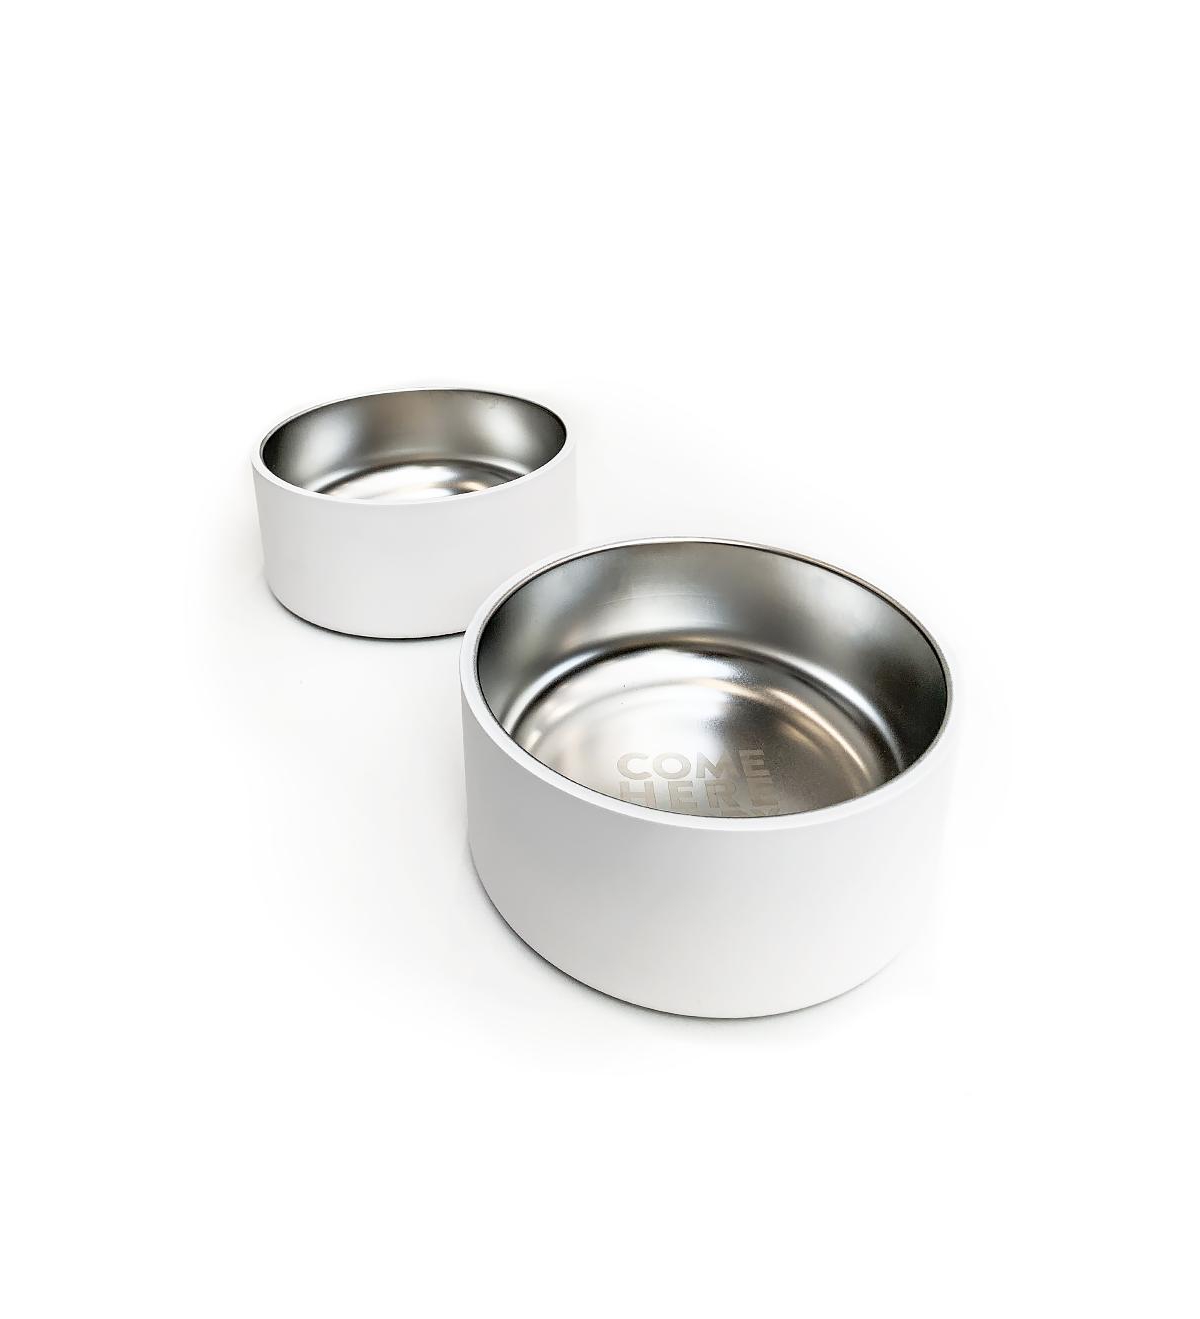 Matching Dog Bowl Set of 2 - White